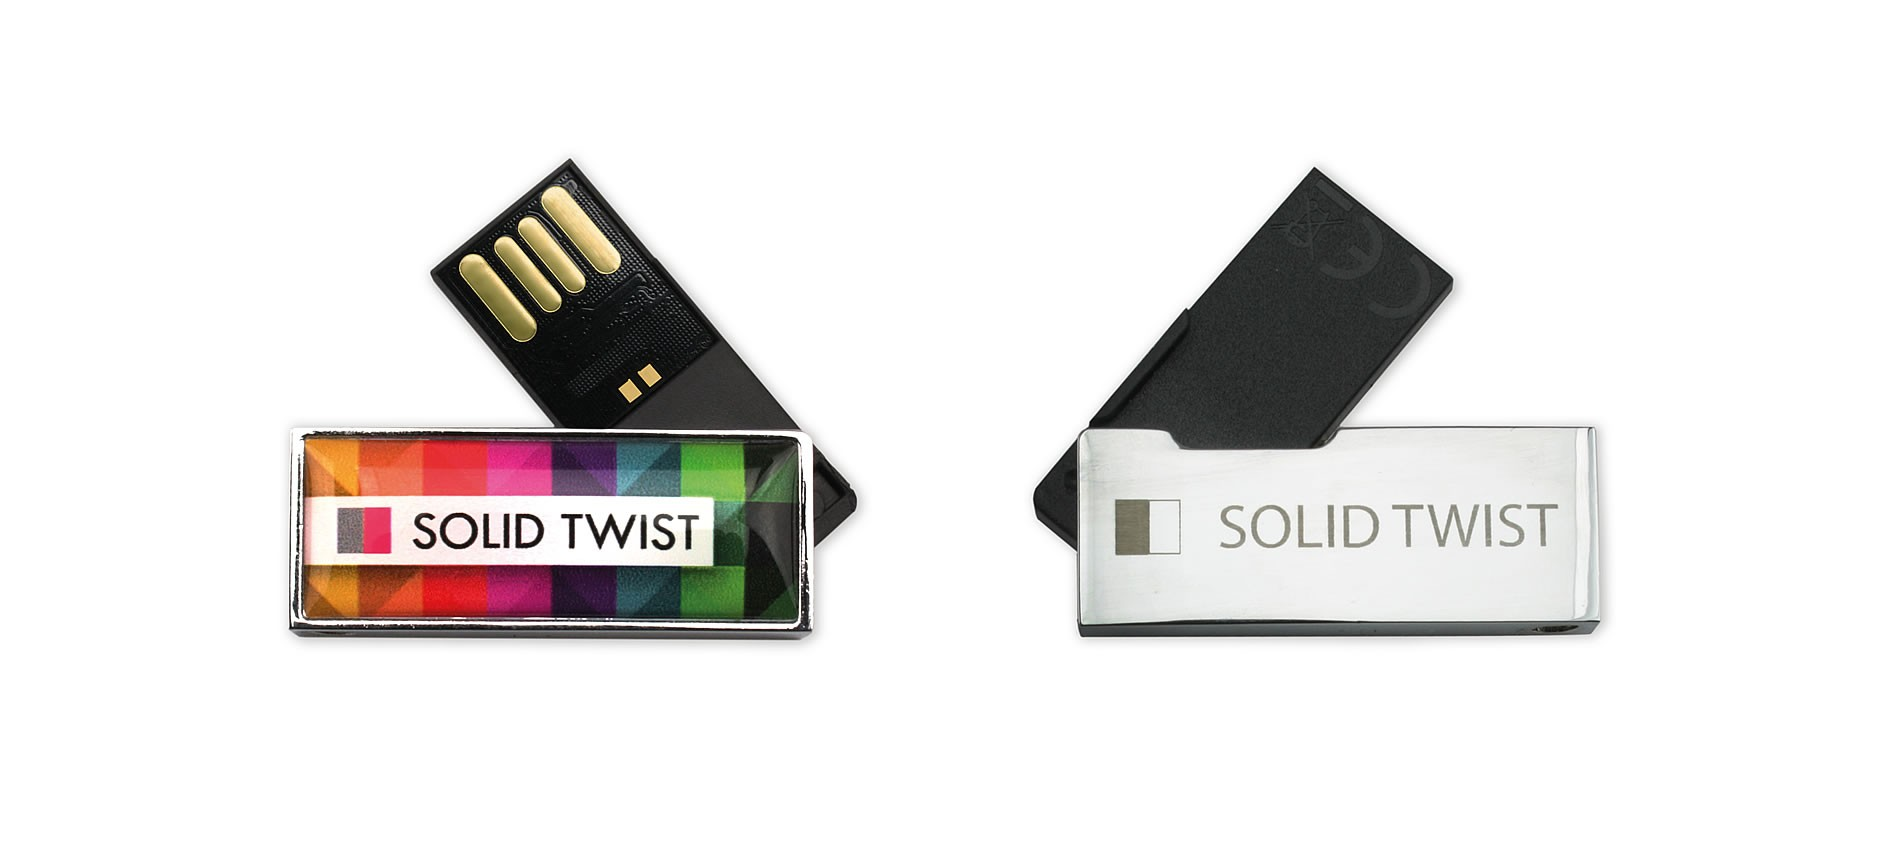 USB Solid Twist. Kompakt usb bellek orjinal tasarımlı. Eğilmez, bükülmez material Küçük ancak zarif USB bellek Küçük boyutu ve zarif metal gövdesi ile çok amaçlı ve göz alıcı.